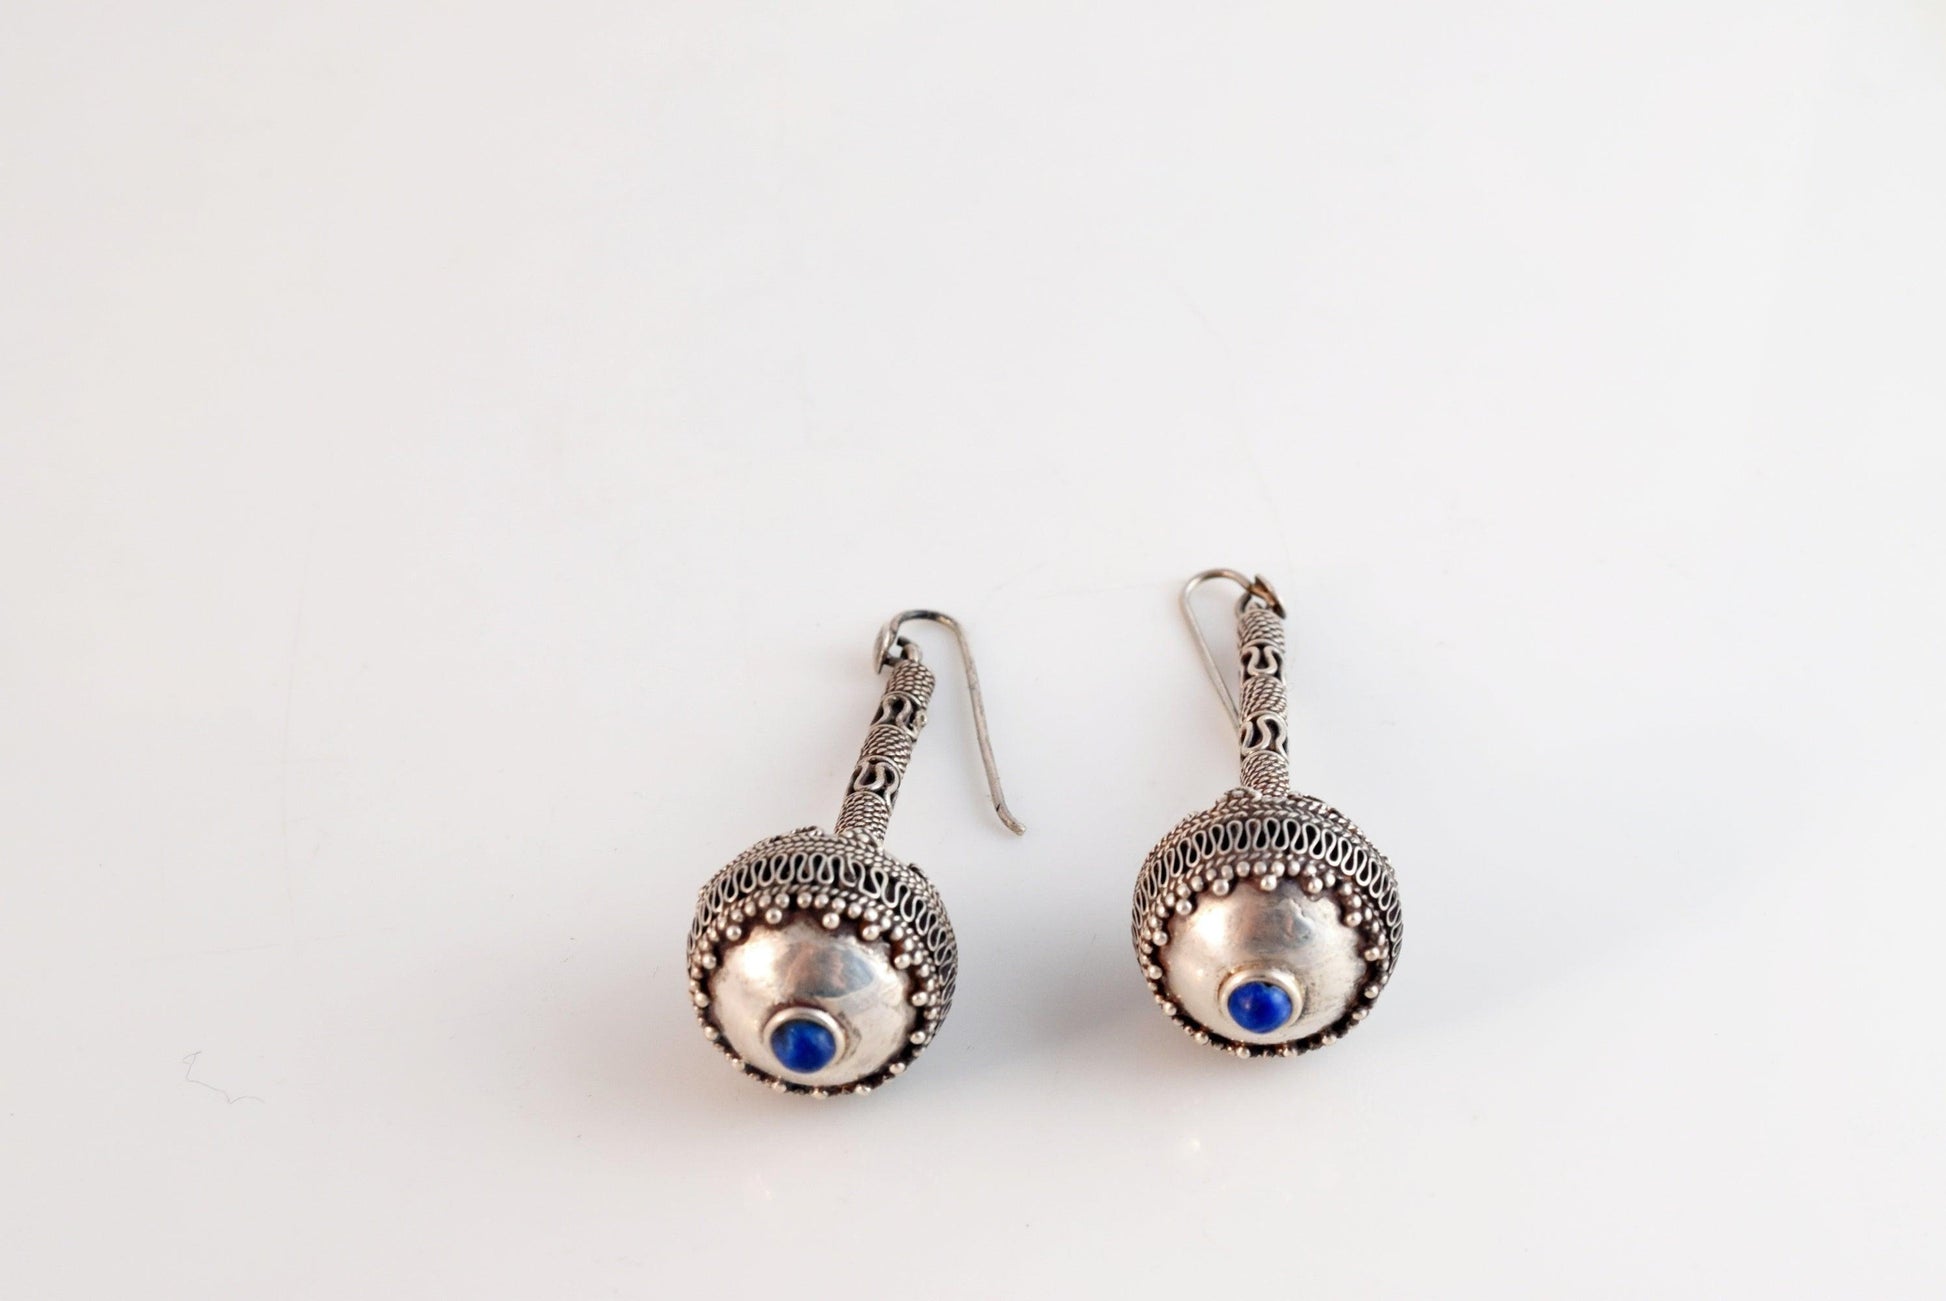 Afghani silver earrings